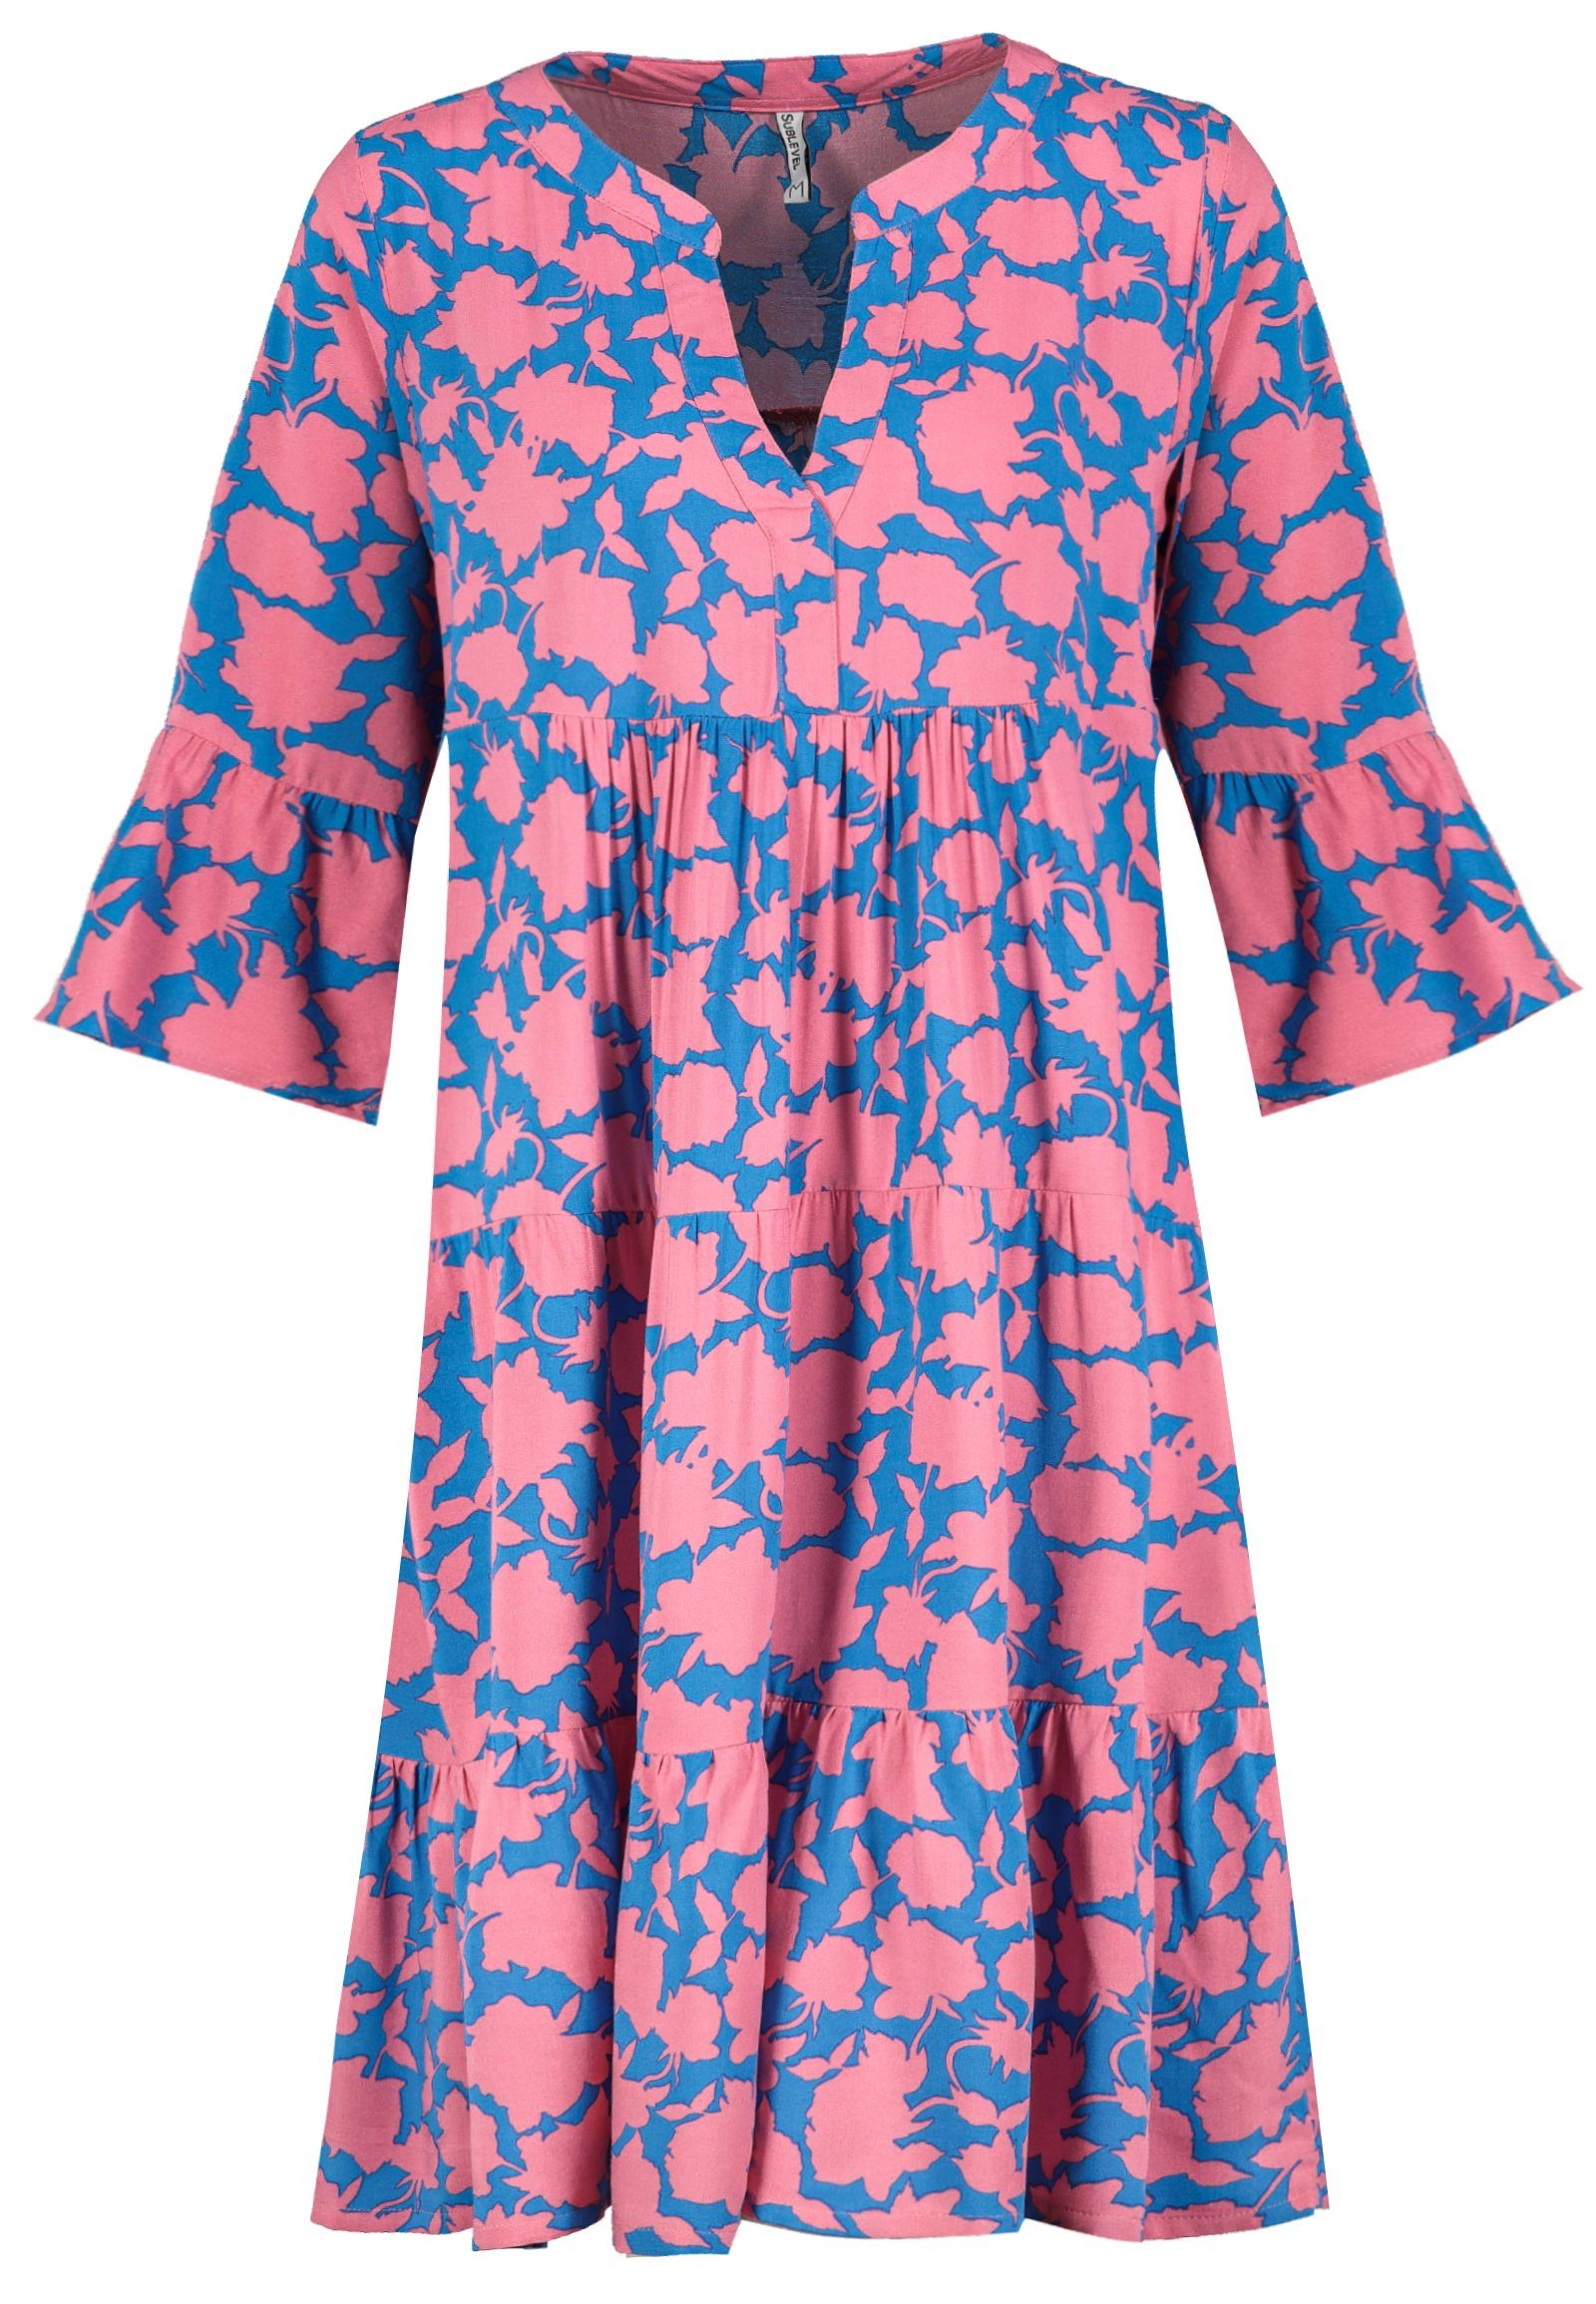 SUBLEVEL Strandkleid Sublevel Damen Kleid Strandkleid Sommerkleid 100% Viskose MIT VOLANTS Bright Turquoise